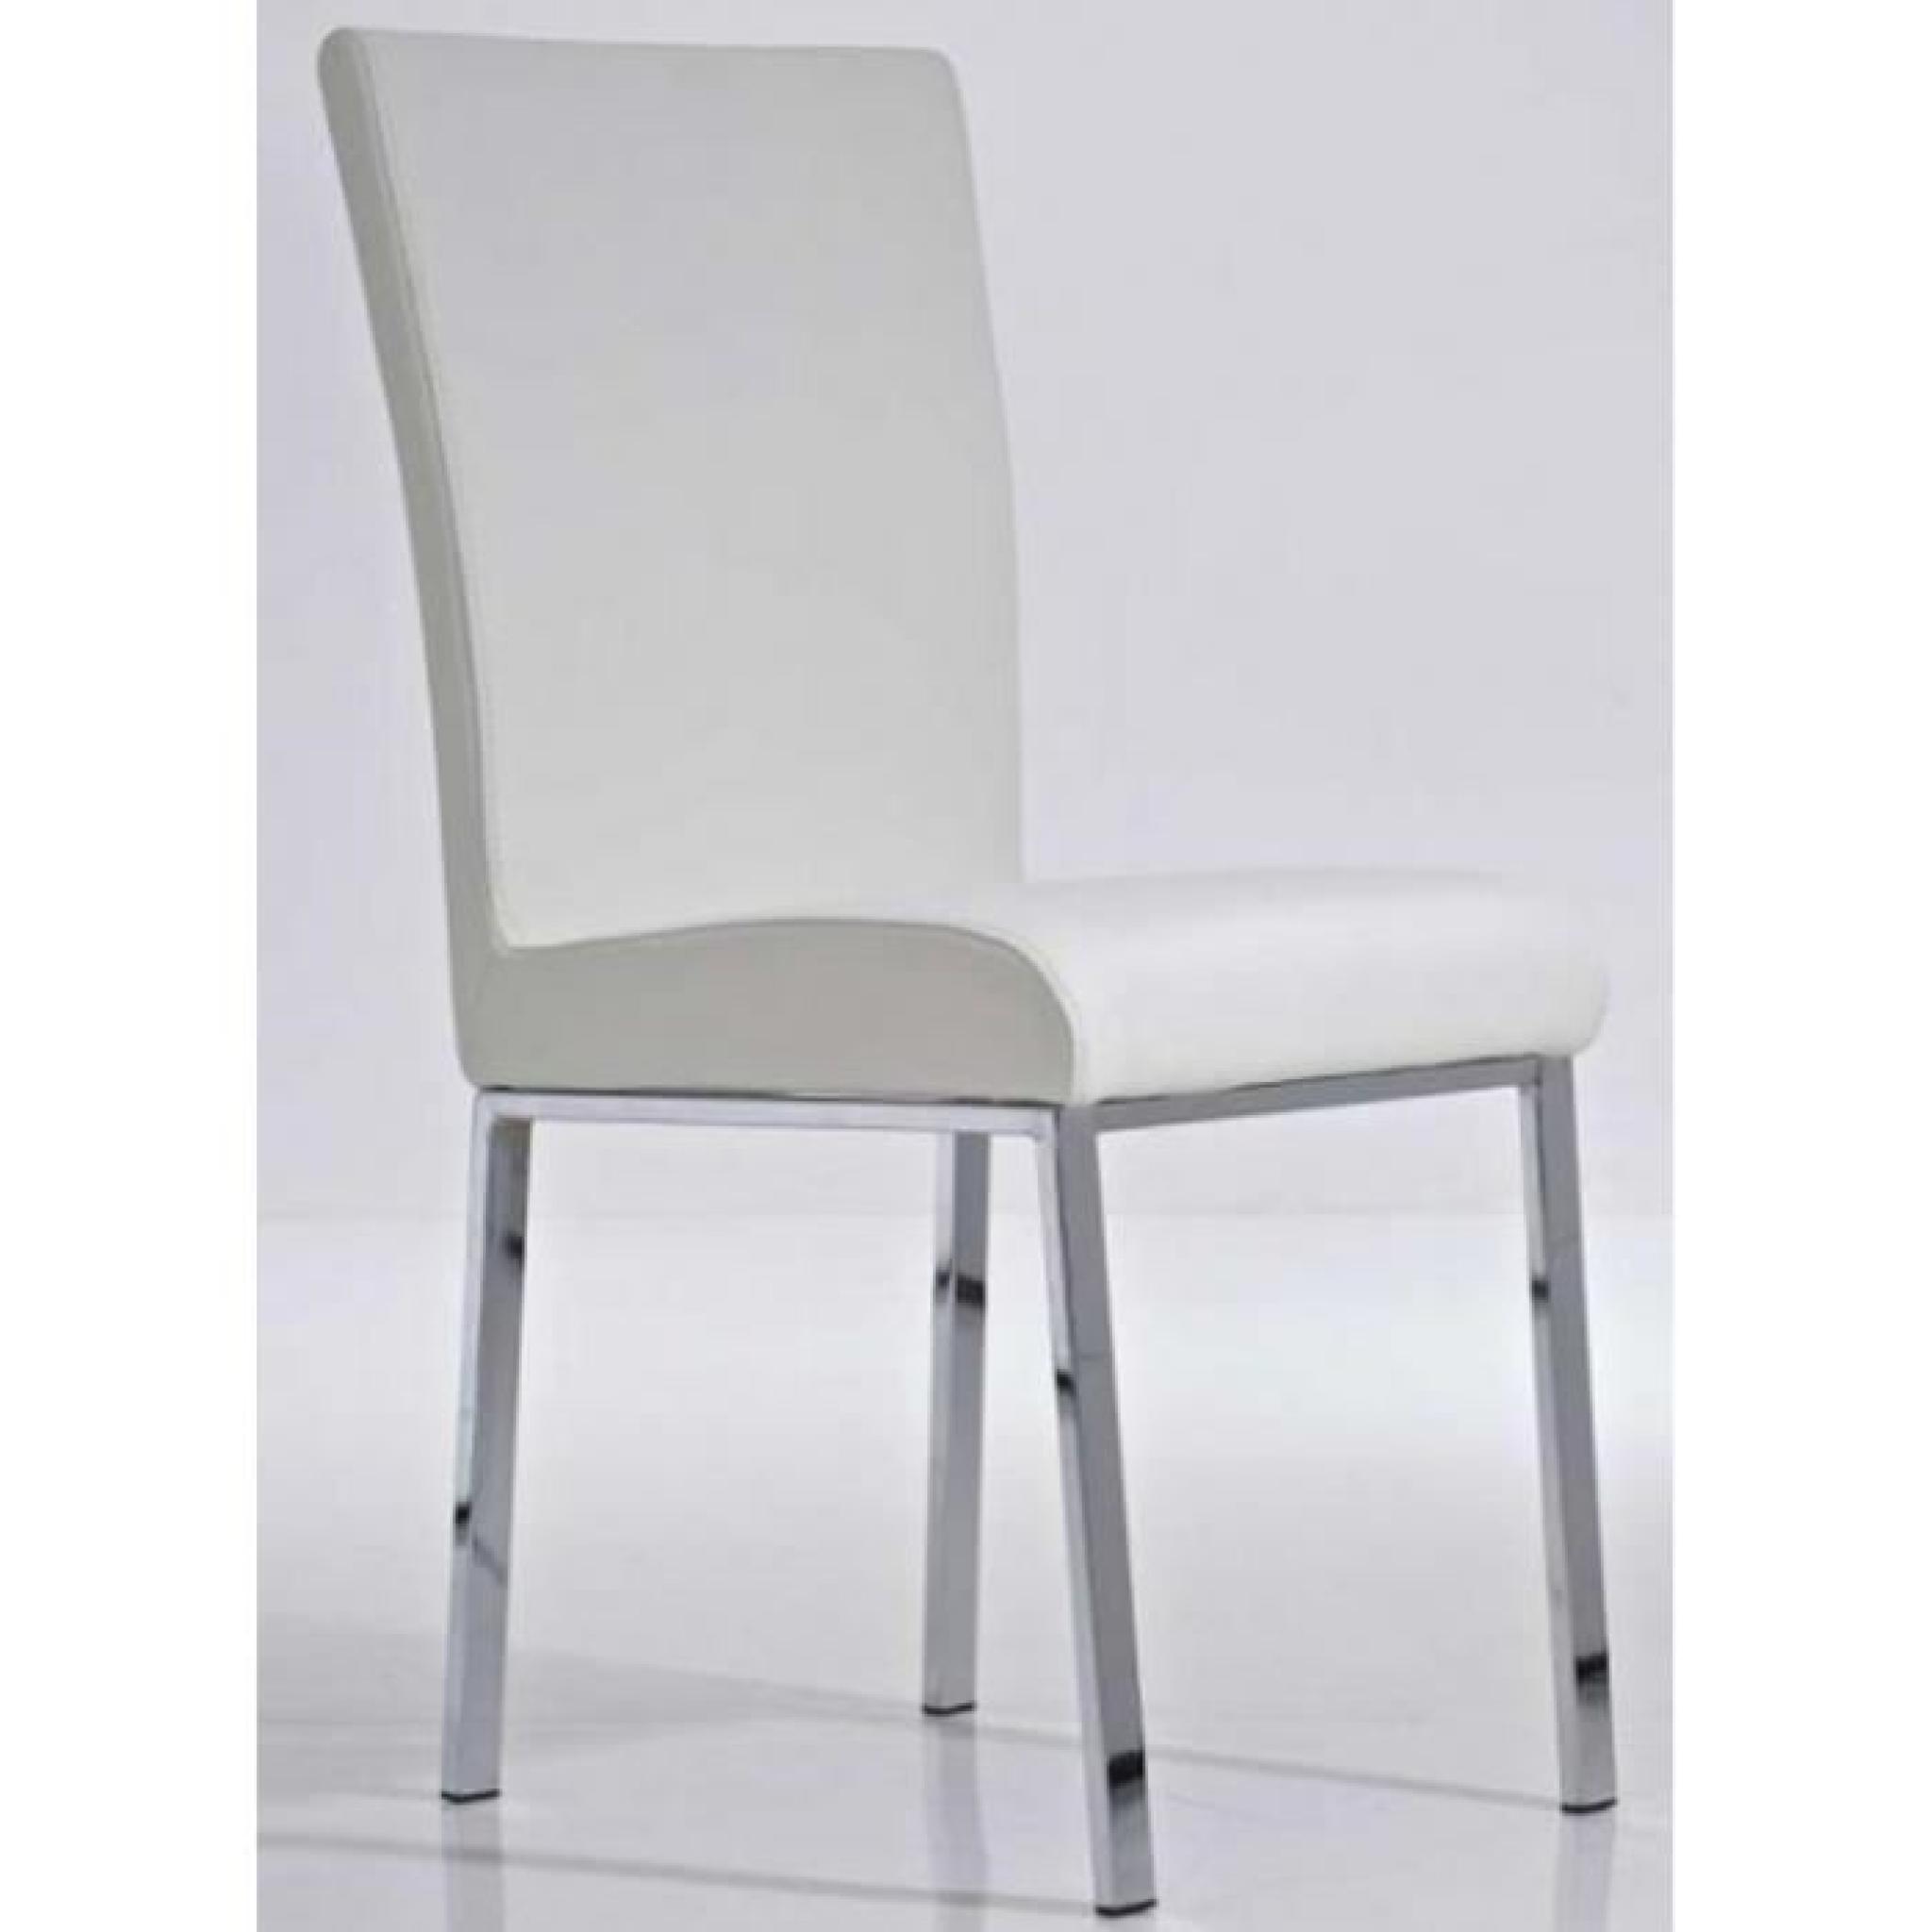 Chaise de salle à manger coloris blanc en similicuir, Dim: H92 x L45 x P53 cm